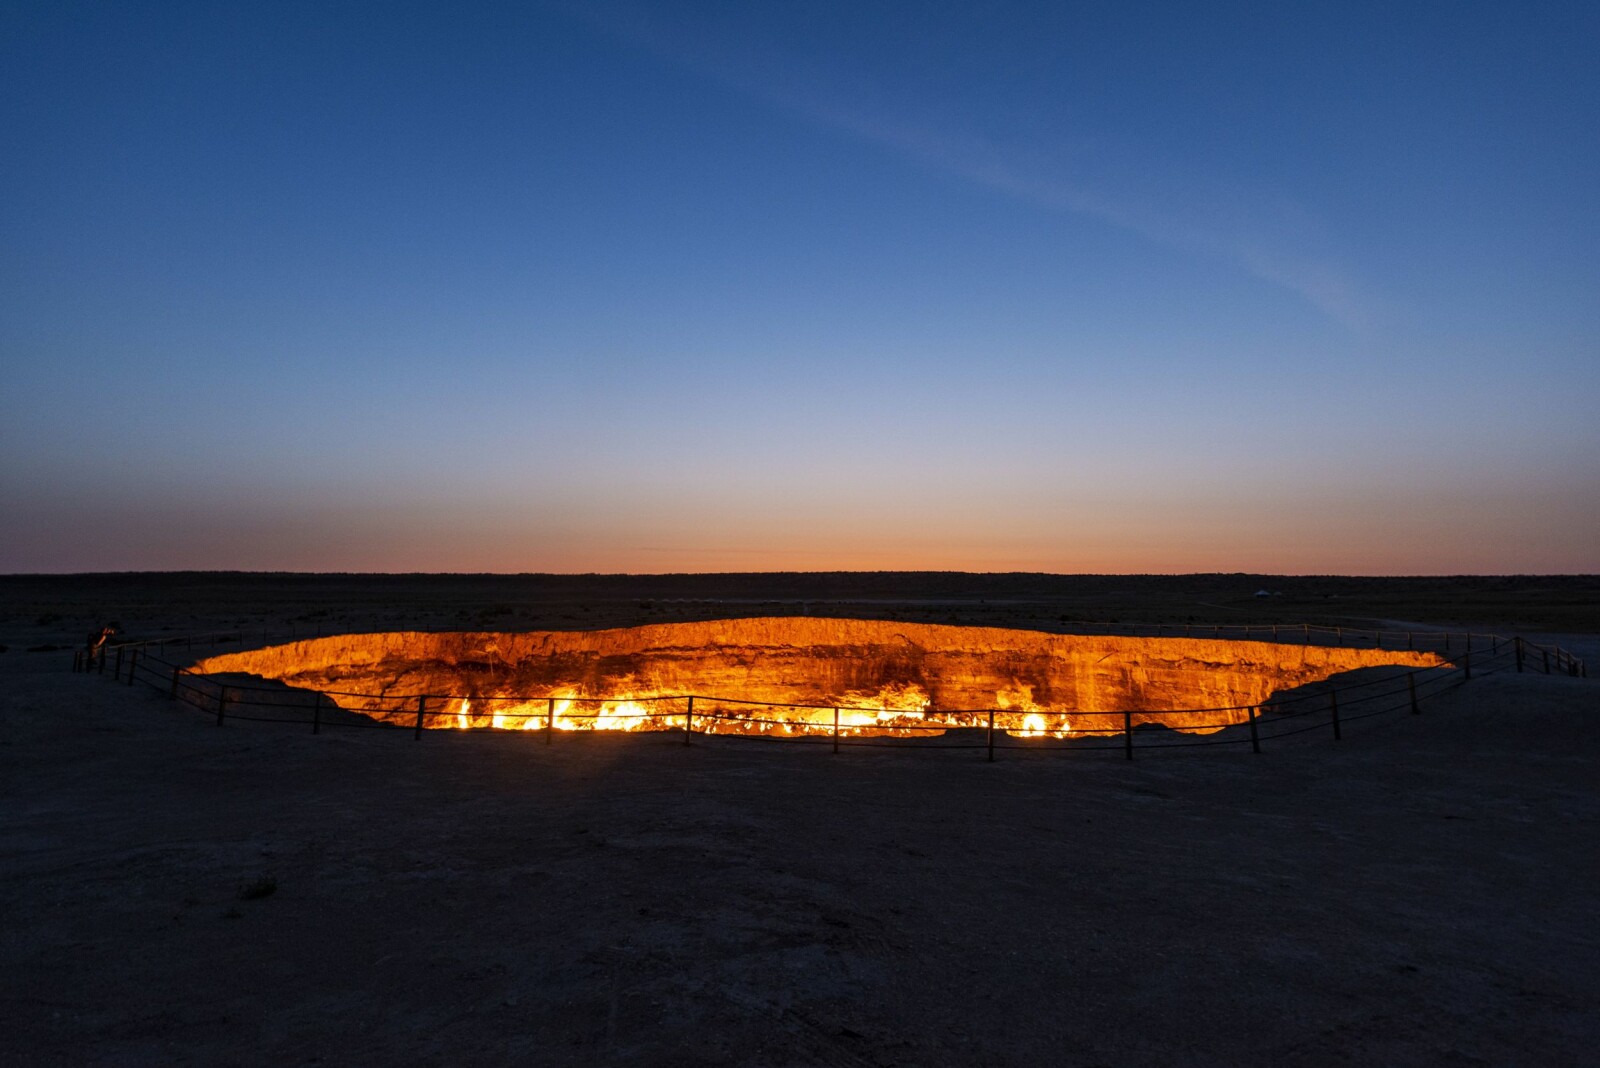 <b>METANHELVETE:</b> Derveze gasskrater er kjent som «Porten til helvete», en av Turkmenistans største turistattraksjoner. Gassen <br>har brent i 48 år.